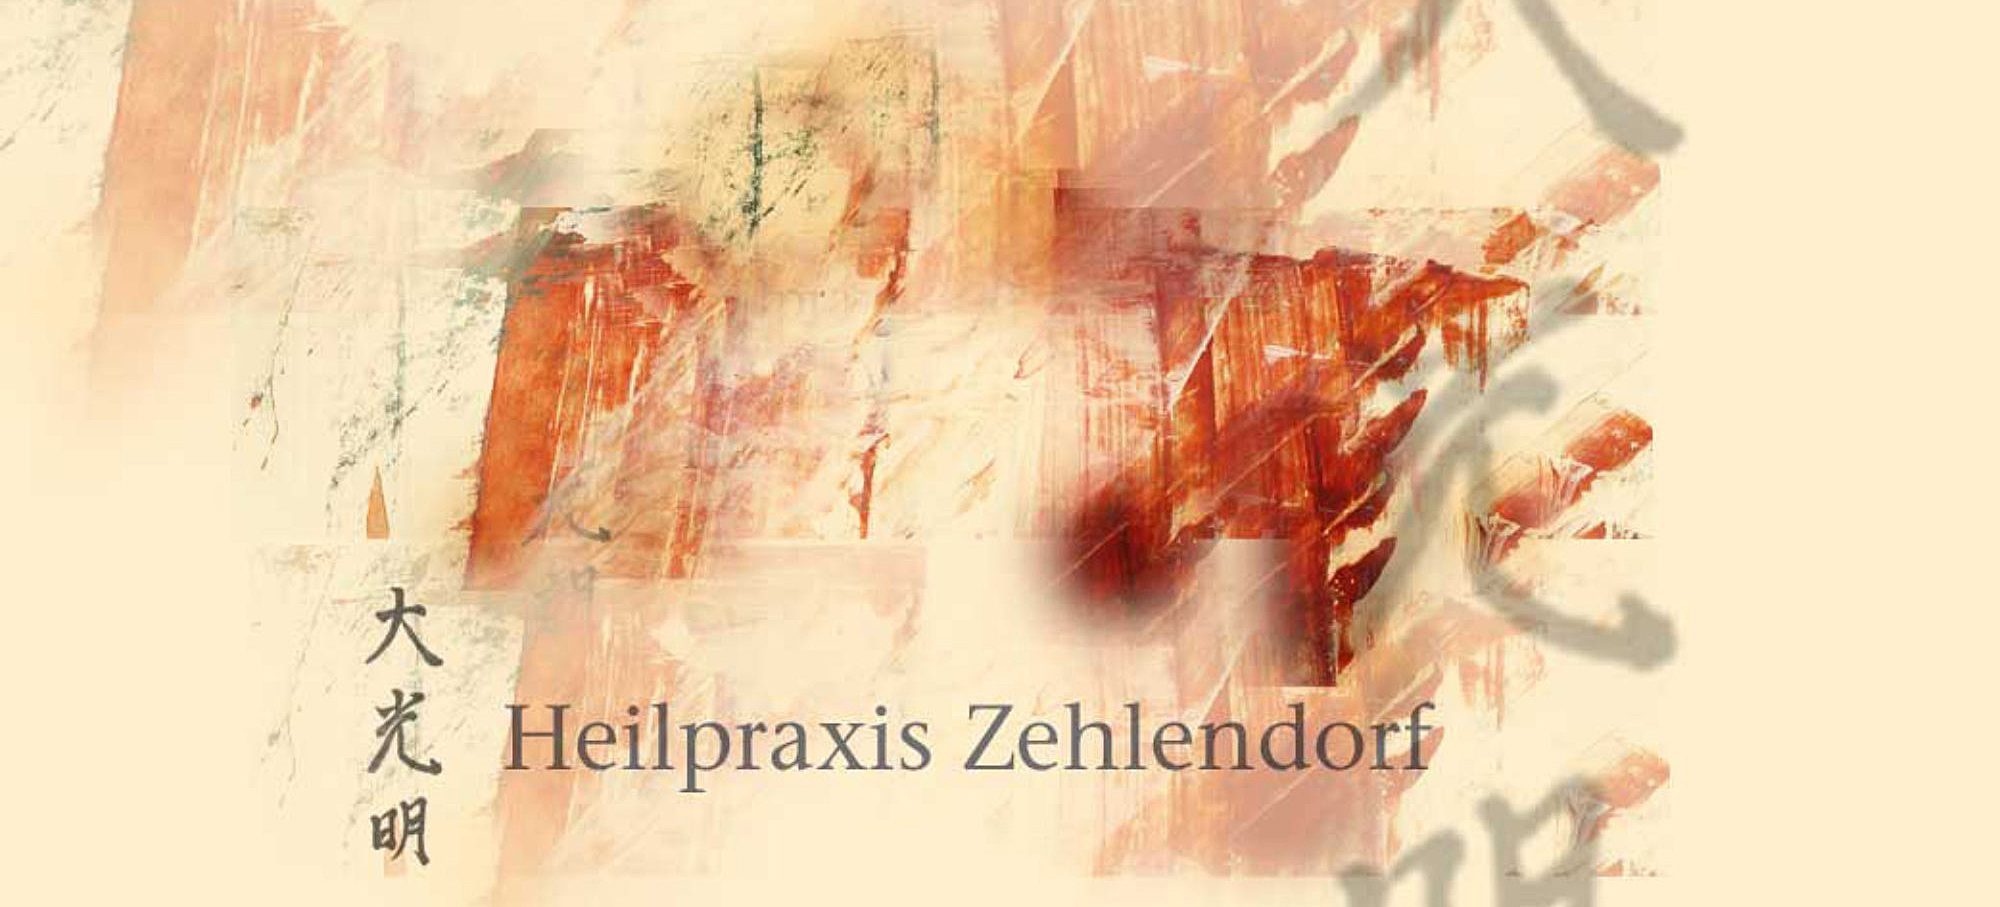 Heilpraktiker Zehlendorf,Akupunktur, Schmerztherapienach Liebscher&Bracht, Heilpraxis-Zehlendorf.de